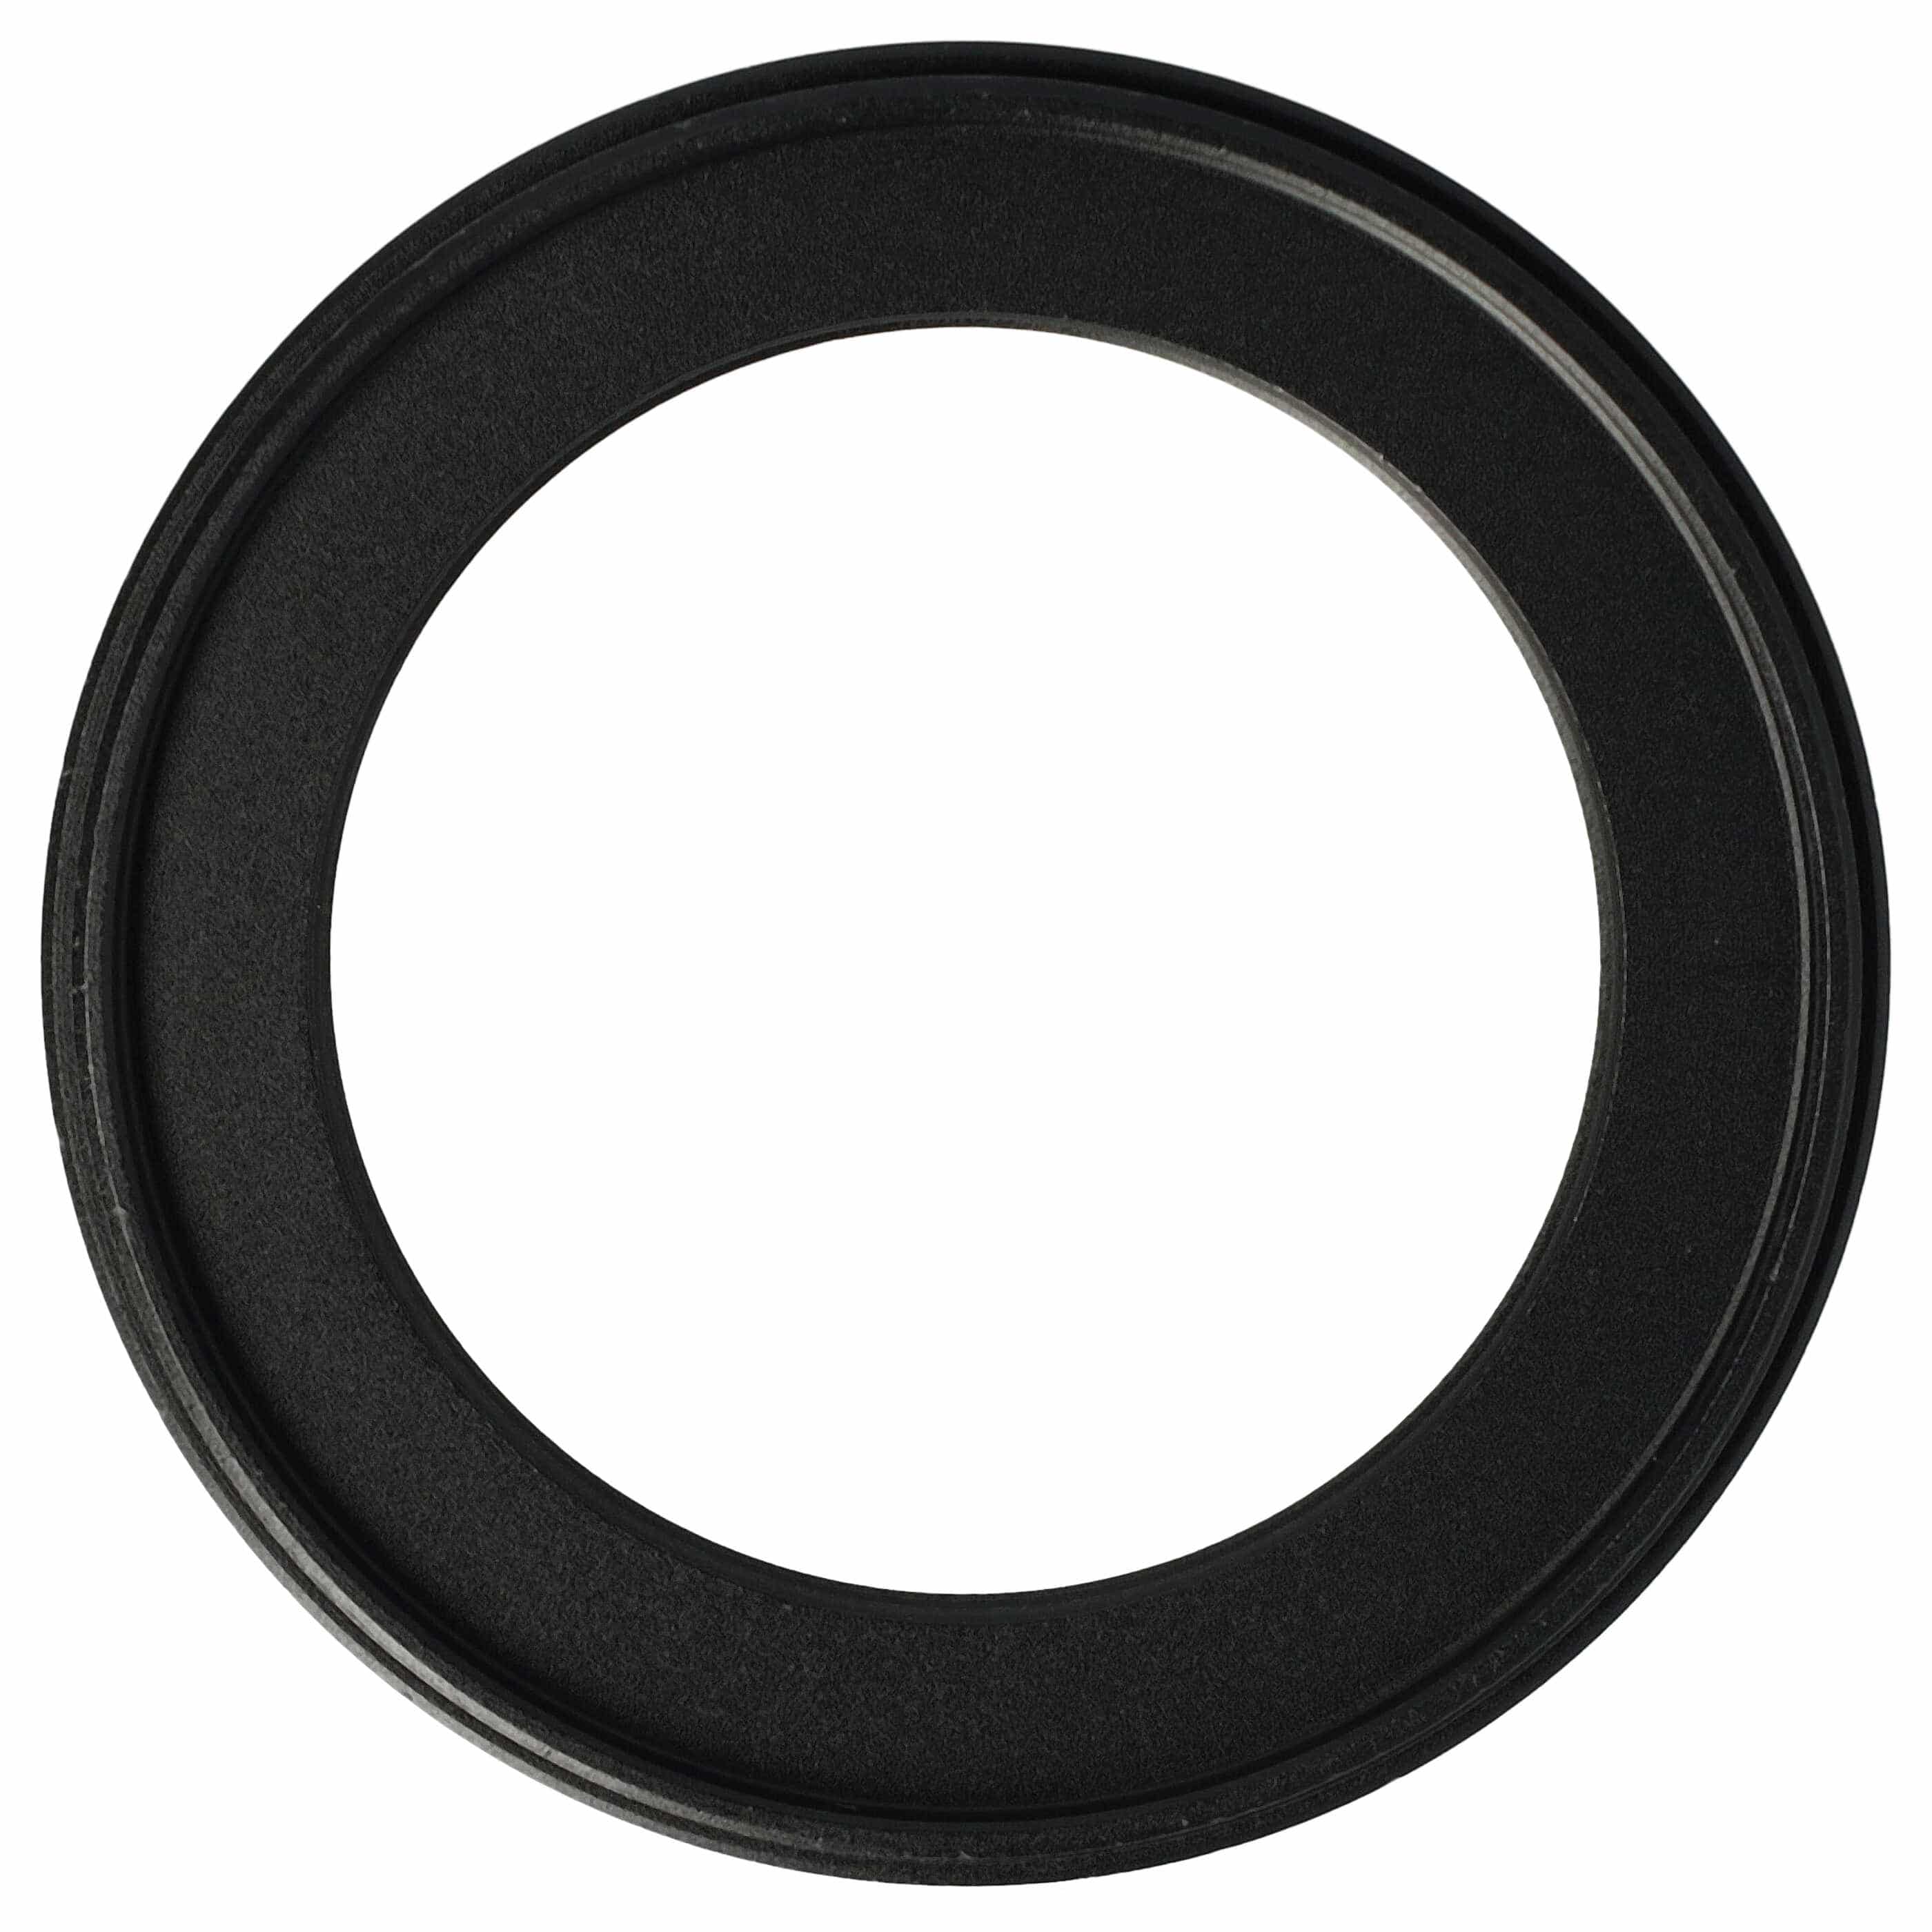 Redukcja filtrowa adapter Step-Down 58 mm - 42 mm pasująca do obiektywu - metal, czarny